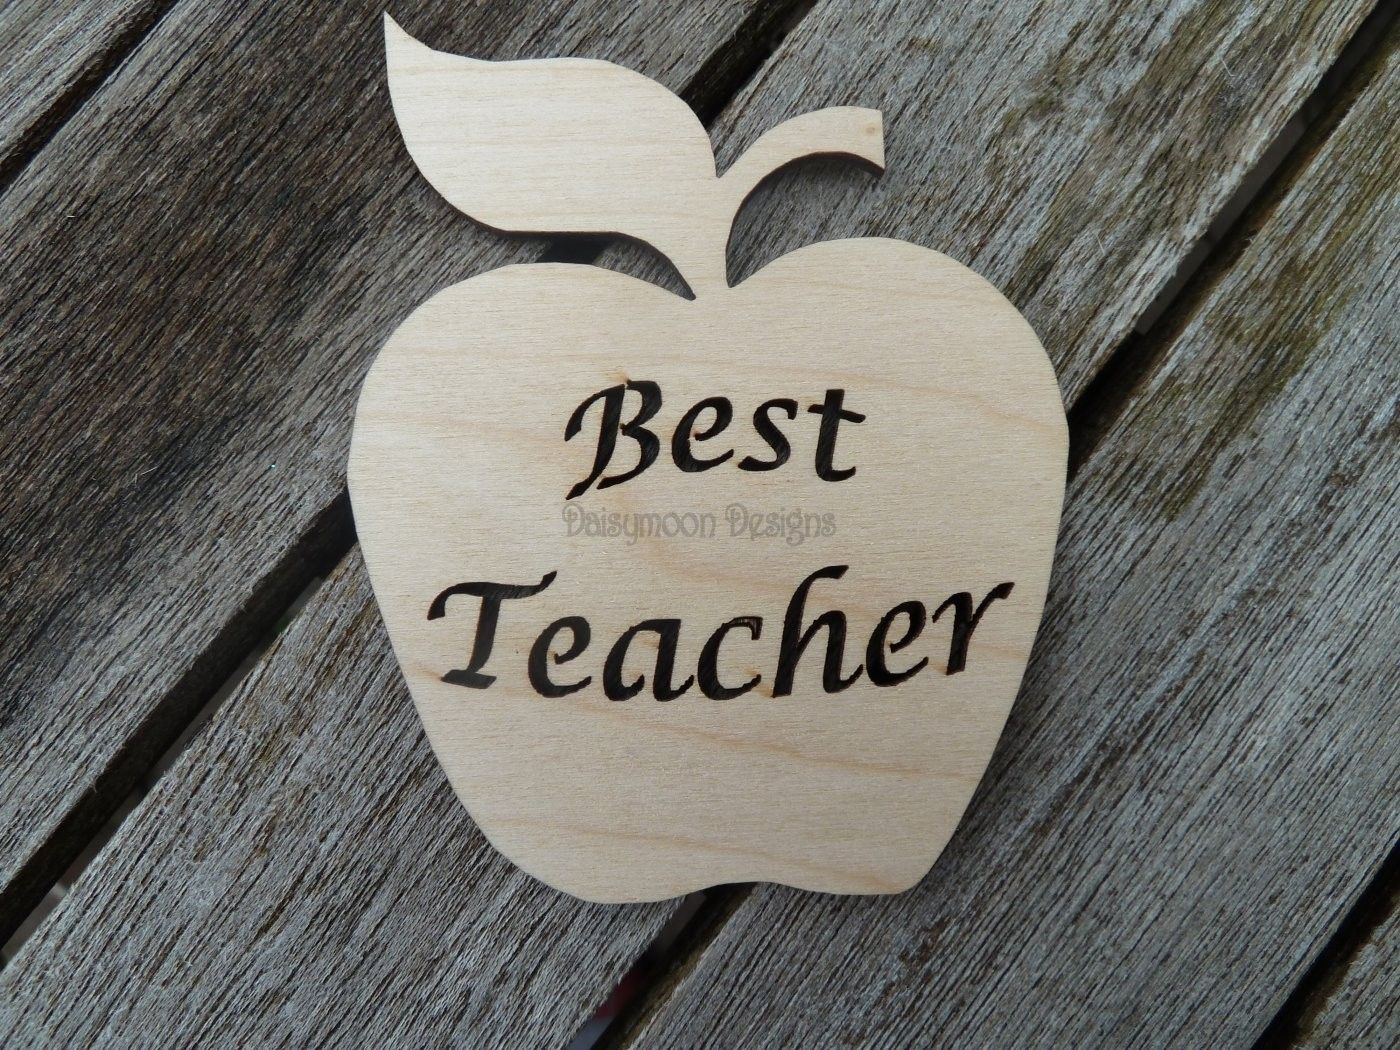 Best teacher. To the best teacher. Картинка best teacher. Картину Life is the best teacher. Life is the best teacher